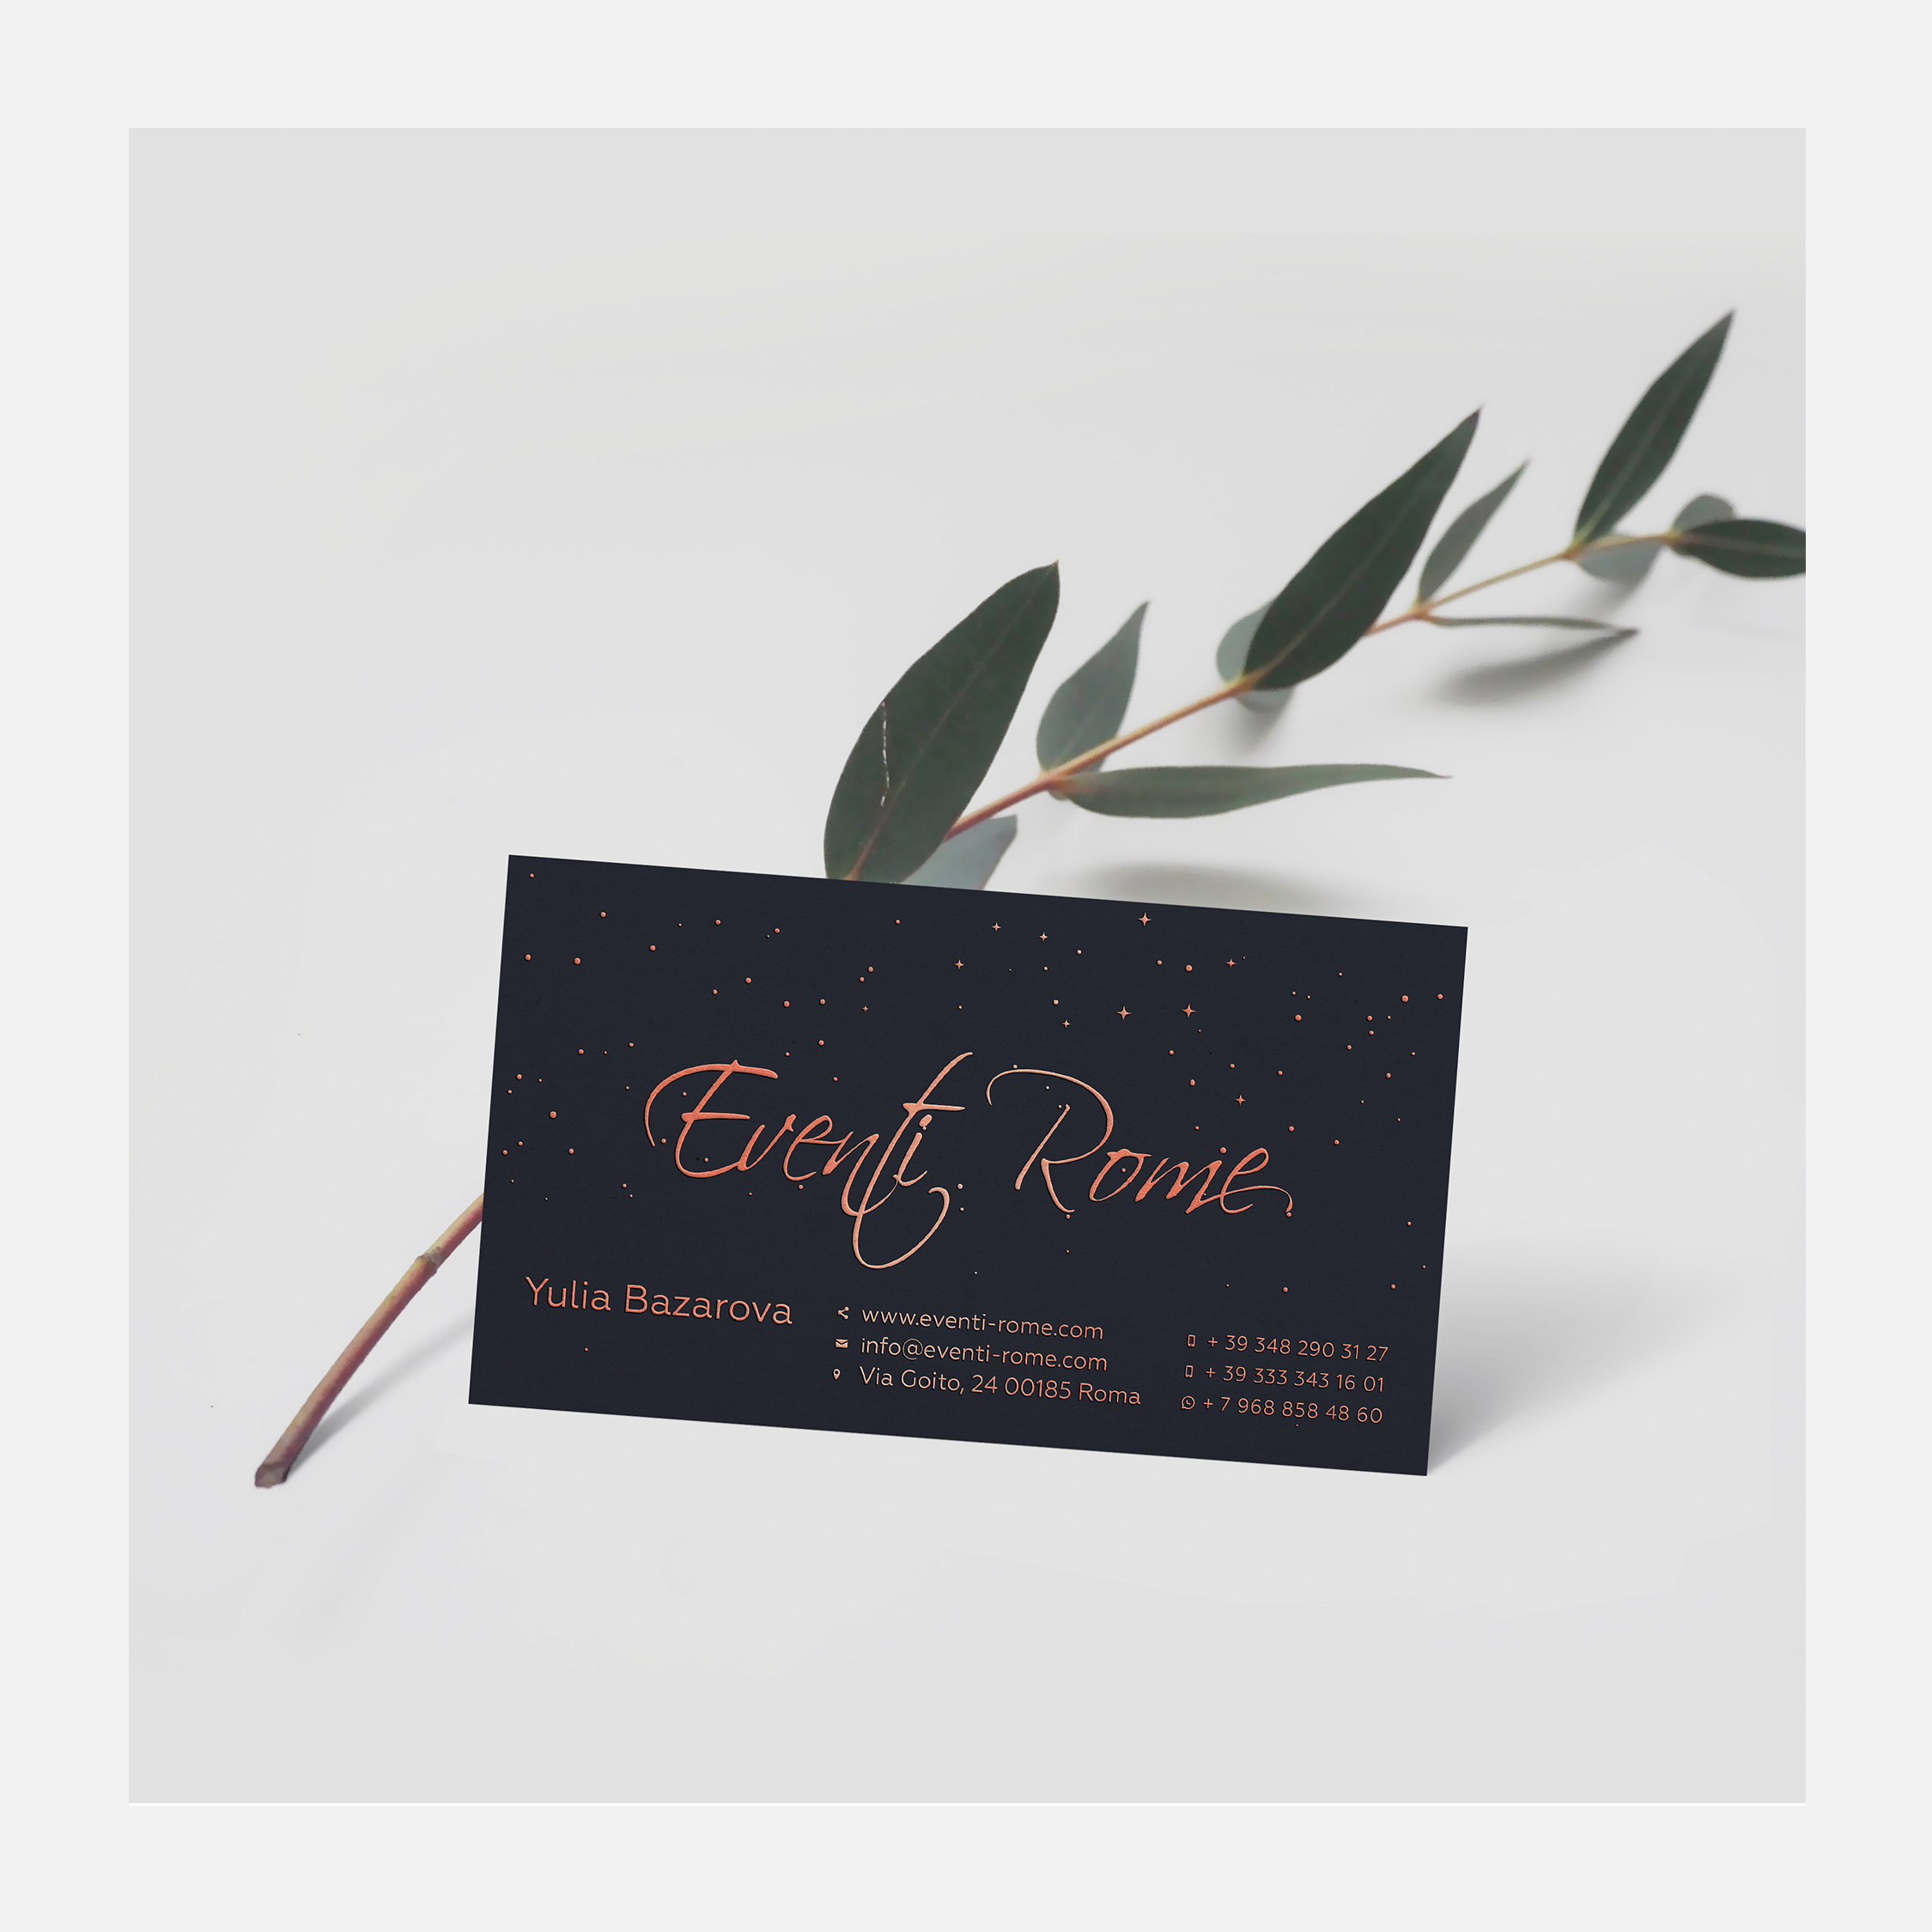 Eventi-Rome business card